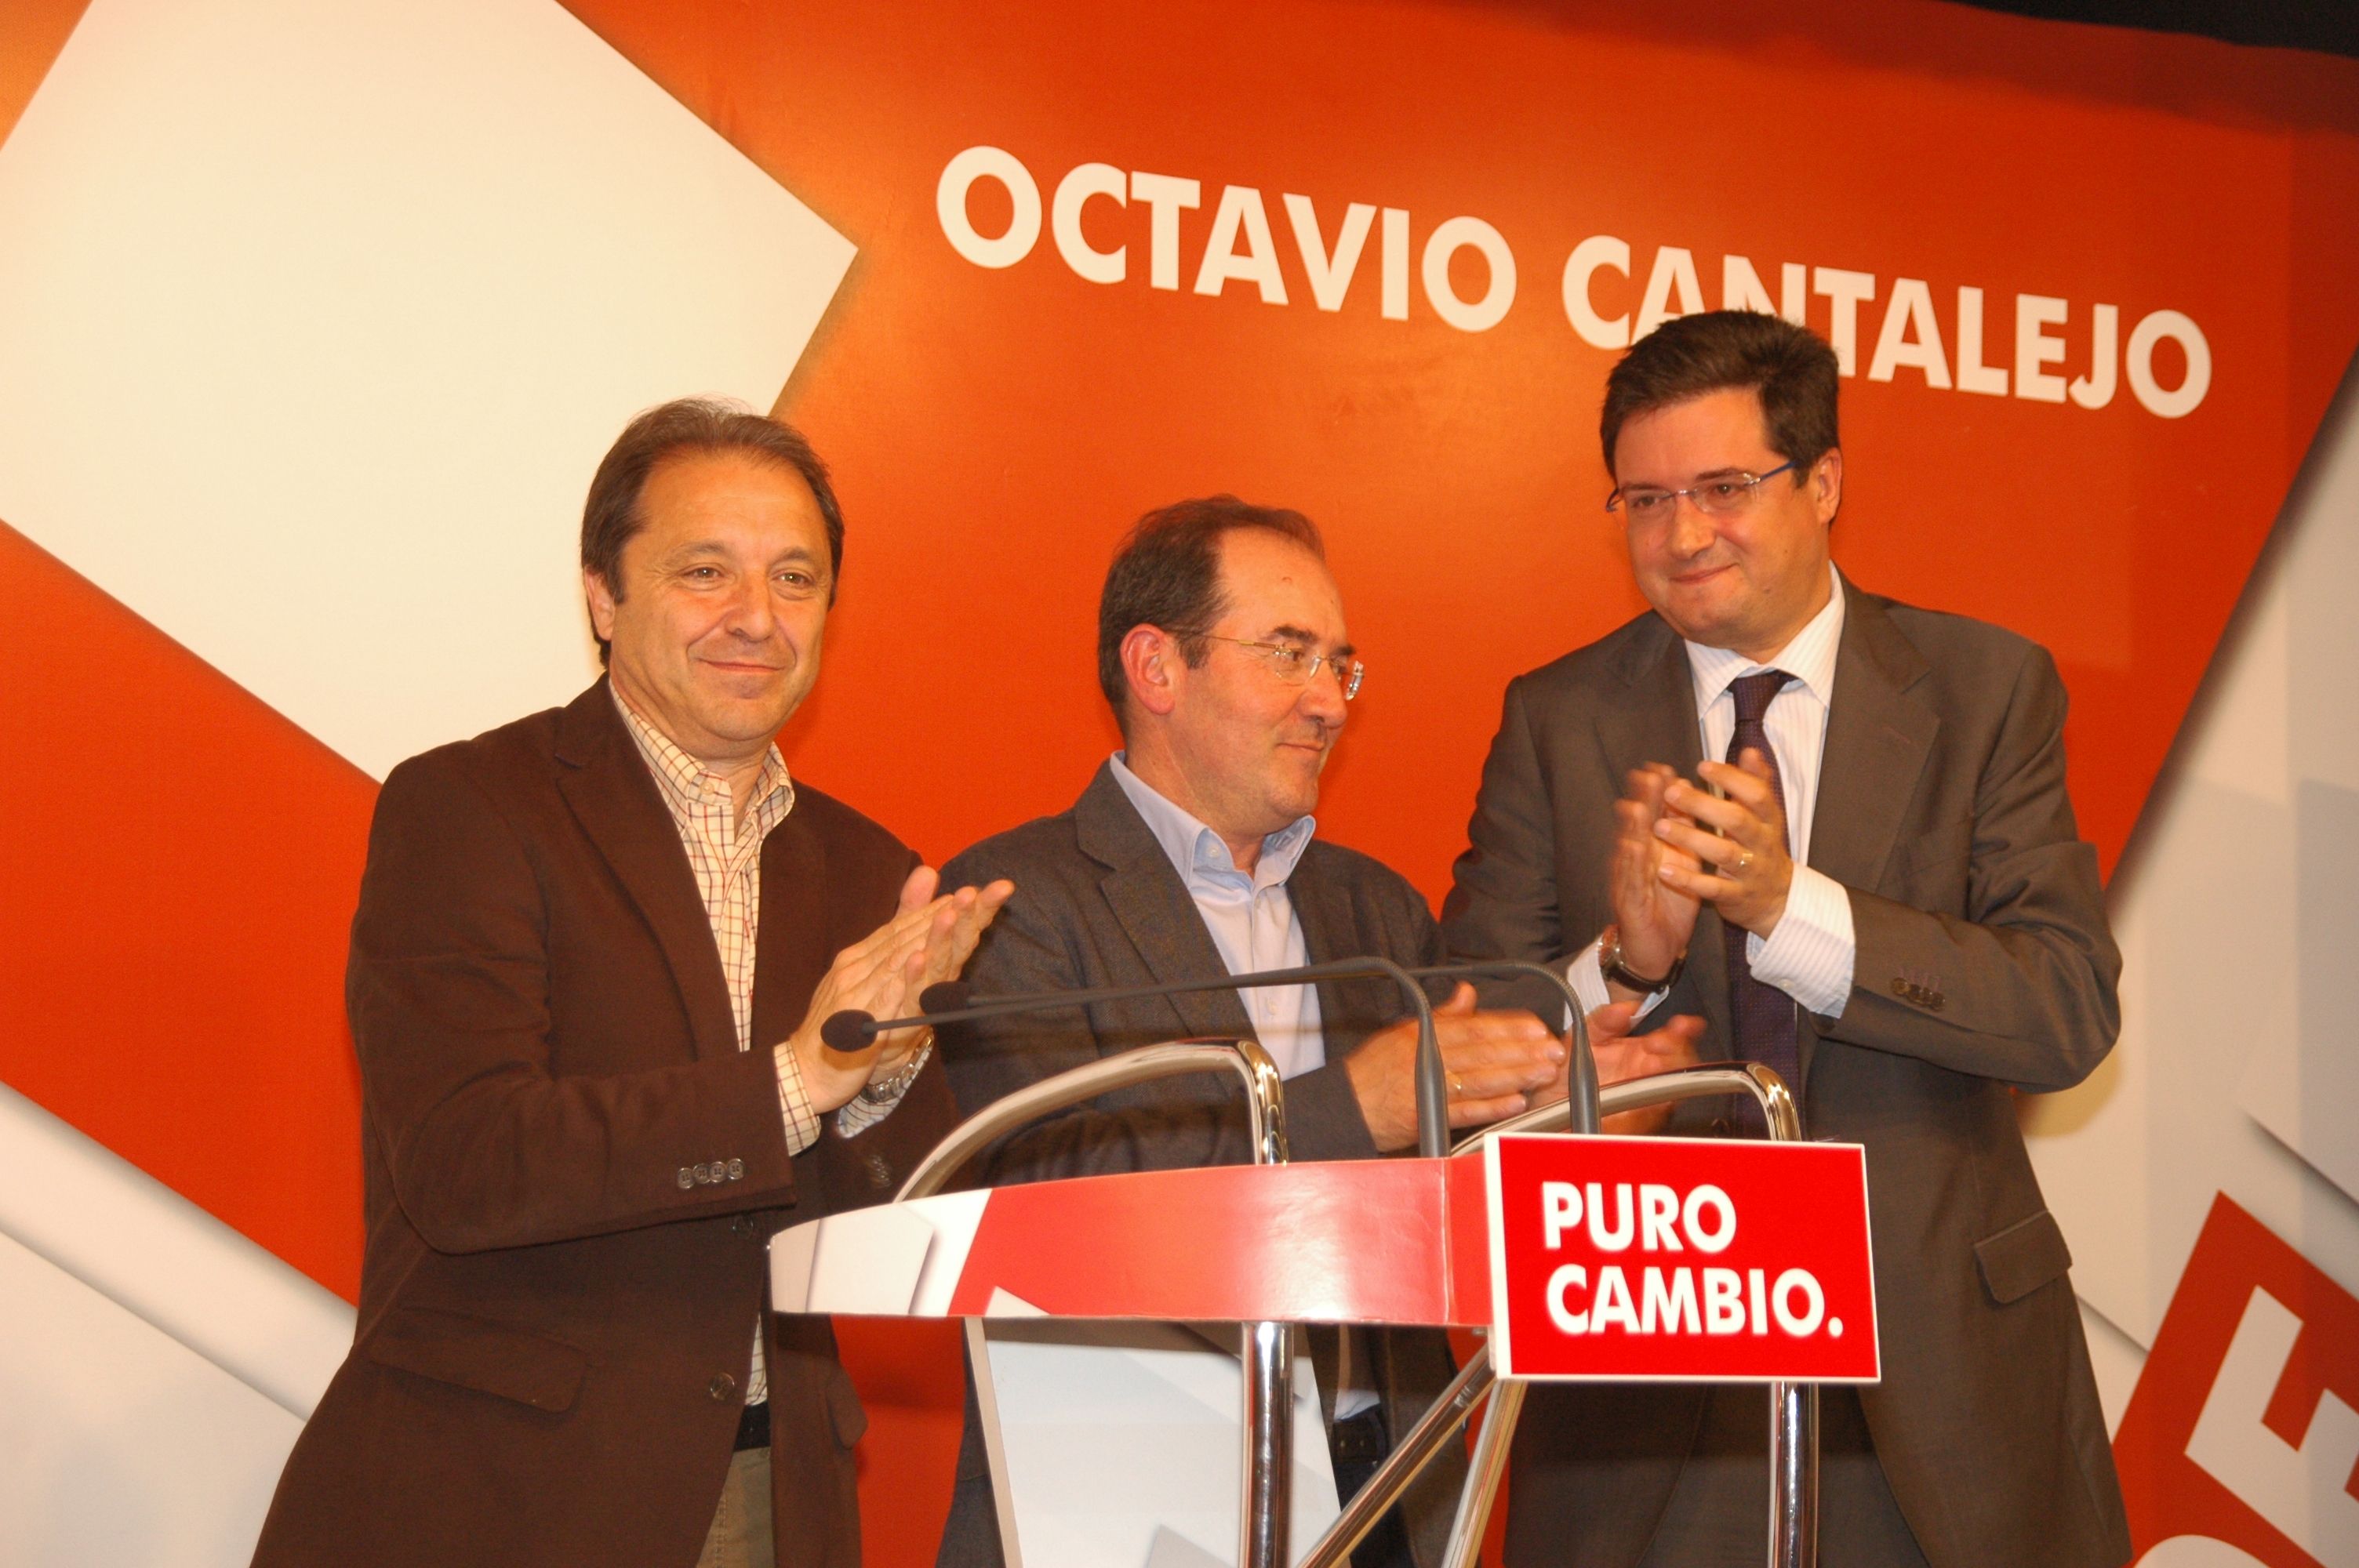 Juan Luis Gordo , O. Cantalejo y Oscar Lopez.